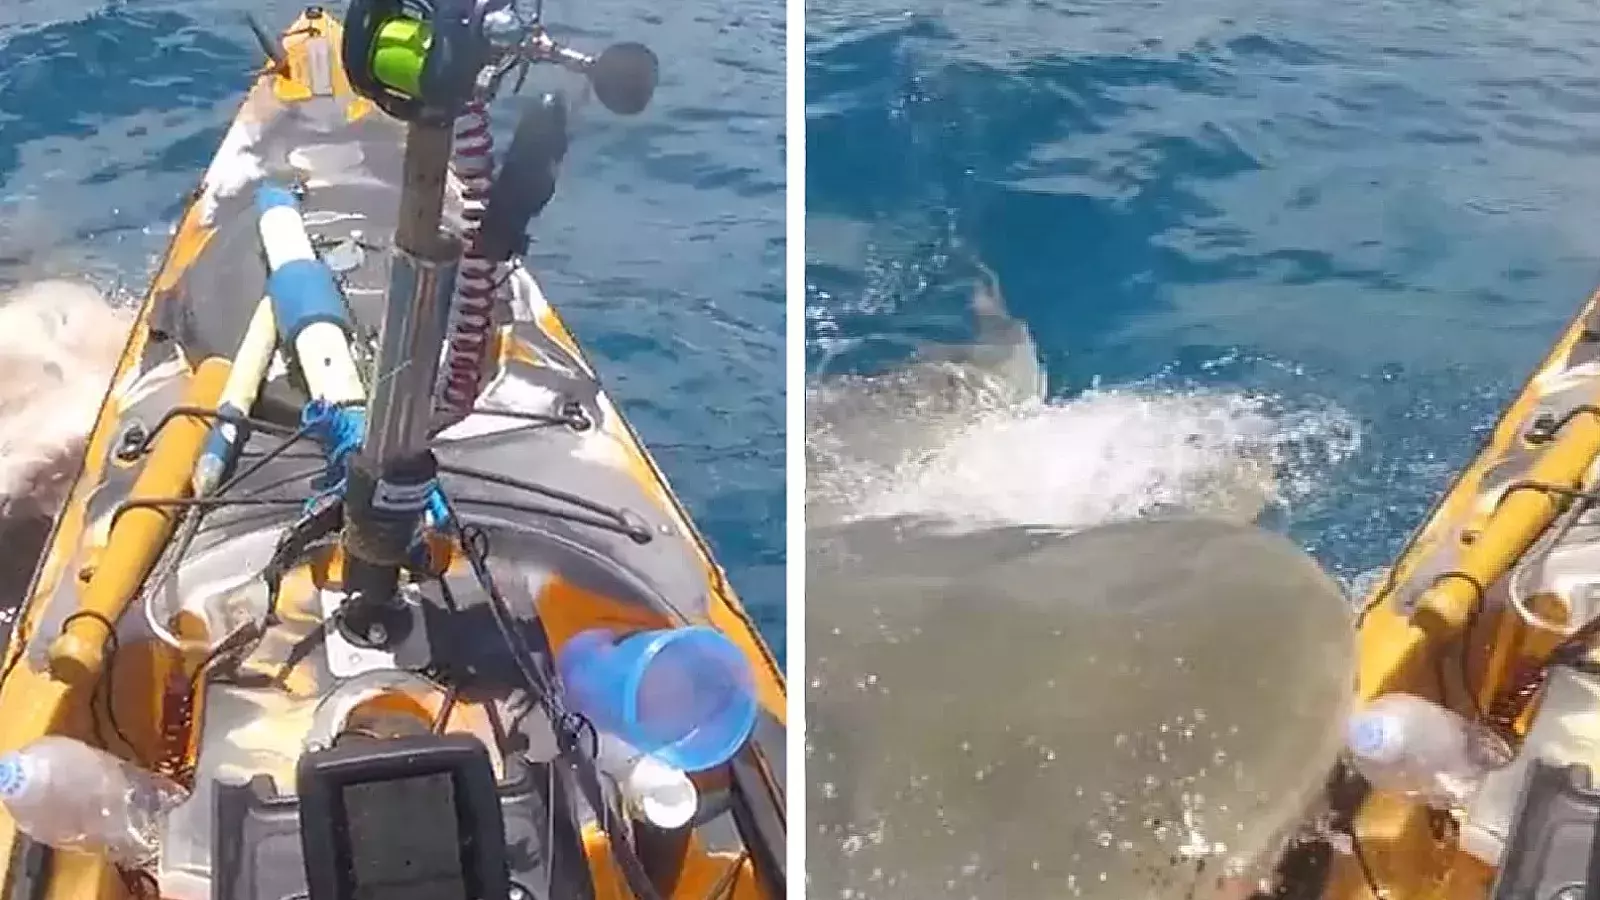 VIDEO: ¡Momento de terror! Un enorme tiburón se lanza sobre el kayak donde pescaba un hombre